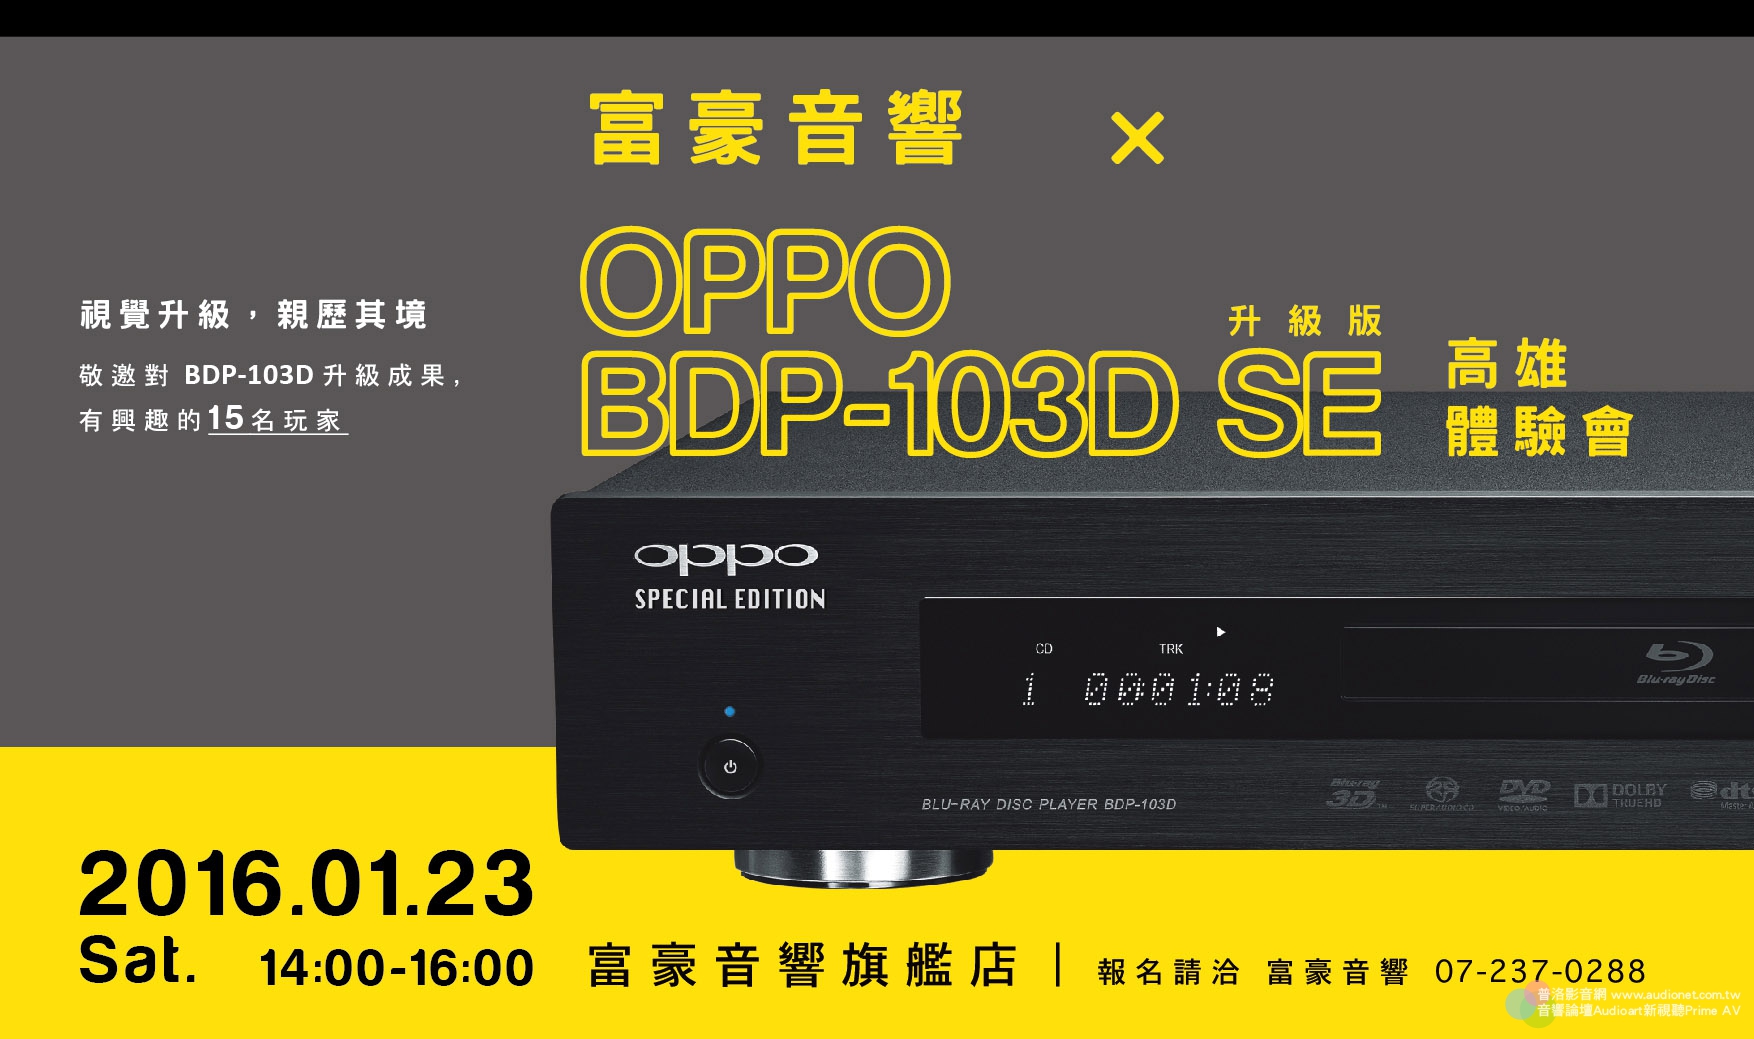 富豪音響 OPPO 103D SE升級版體驗會即日起開放報名囉!